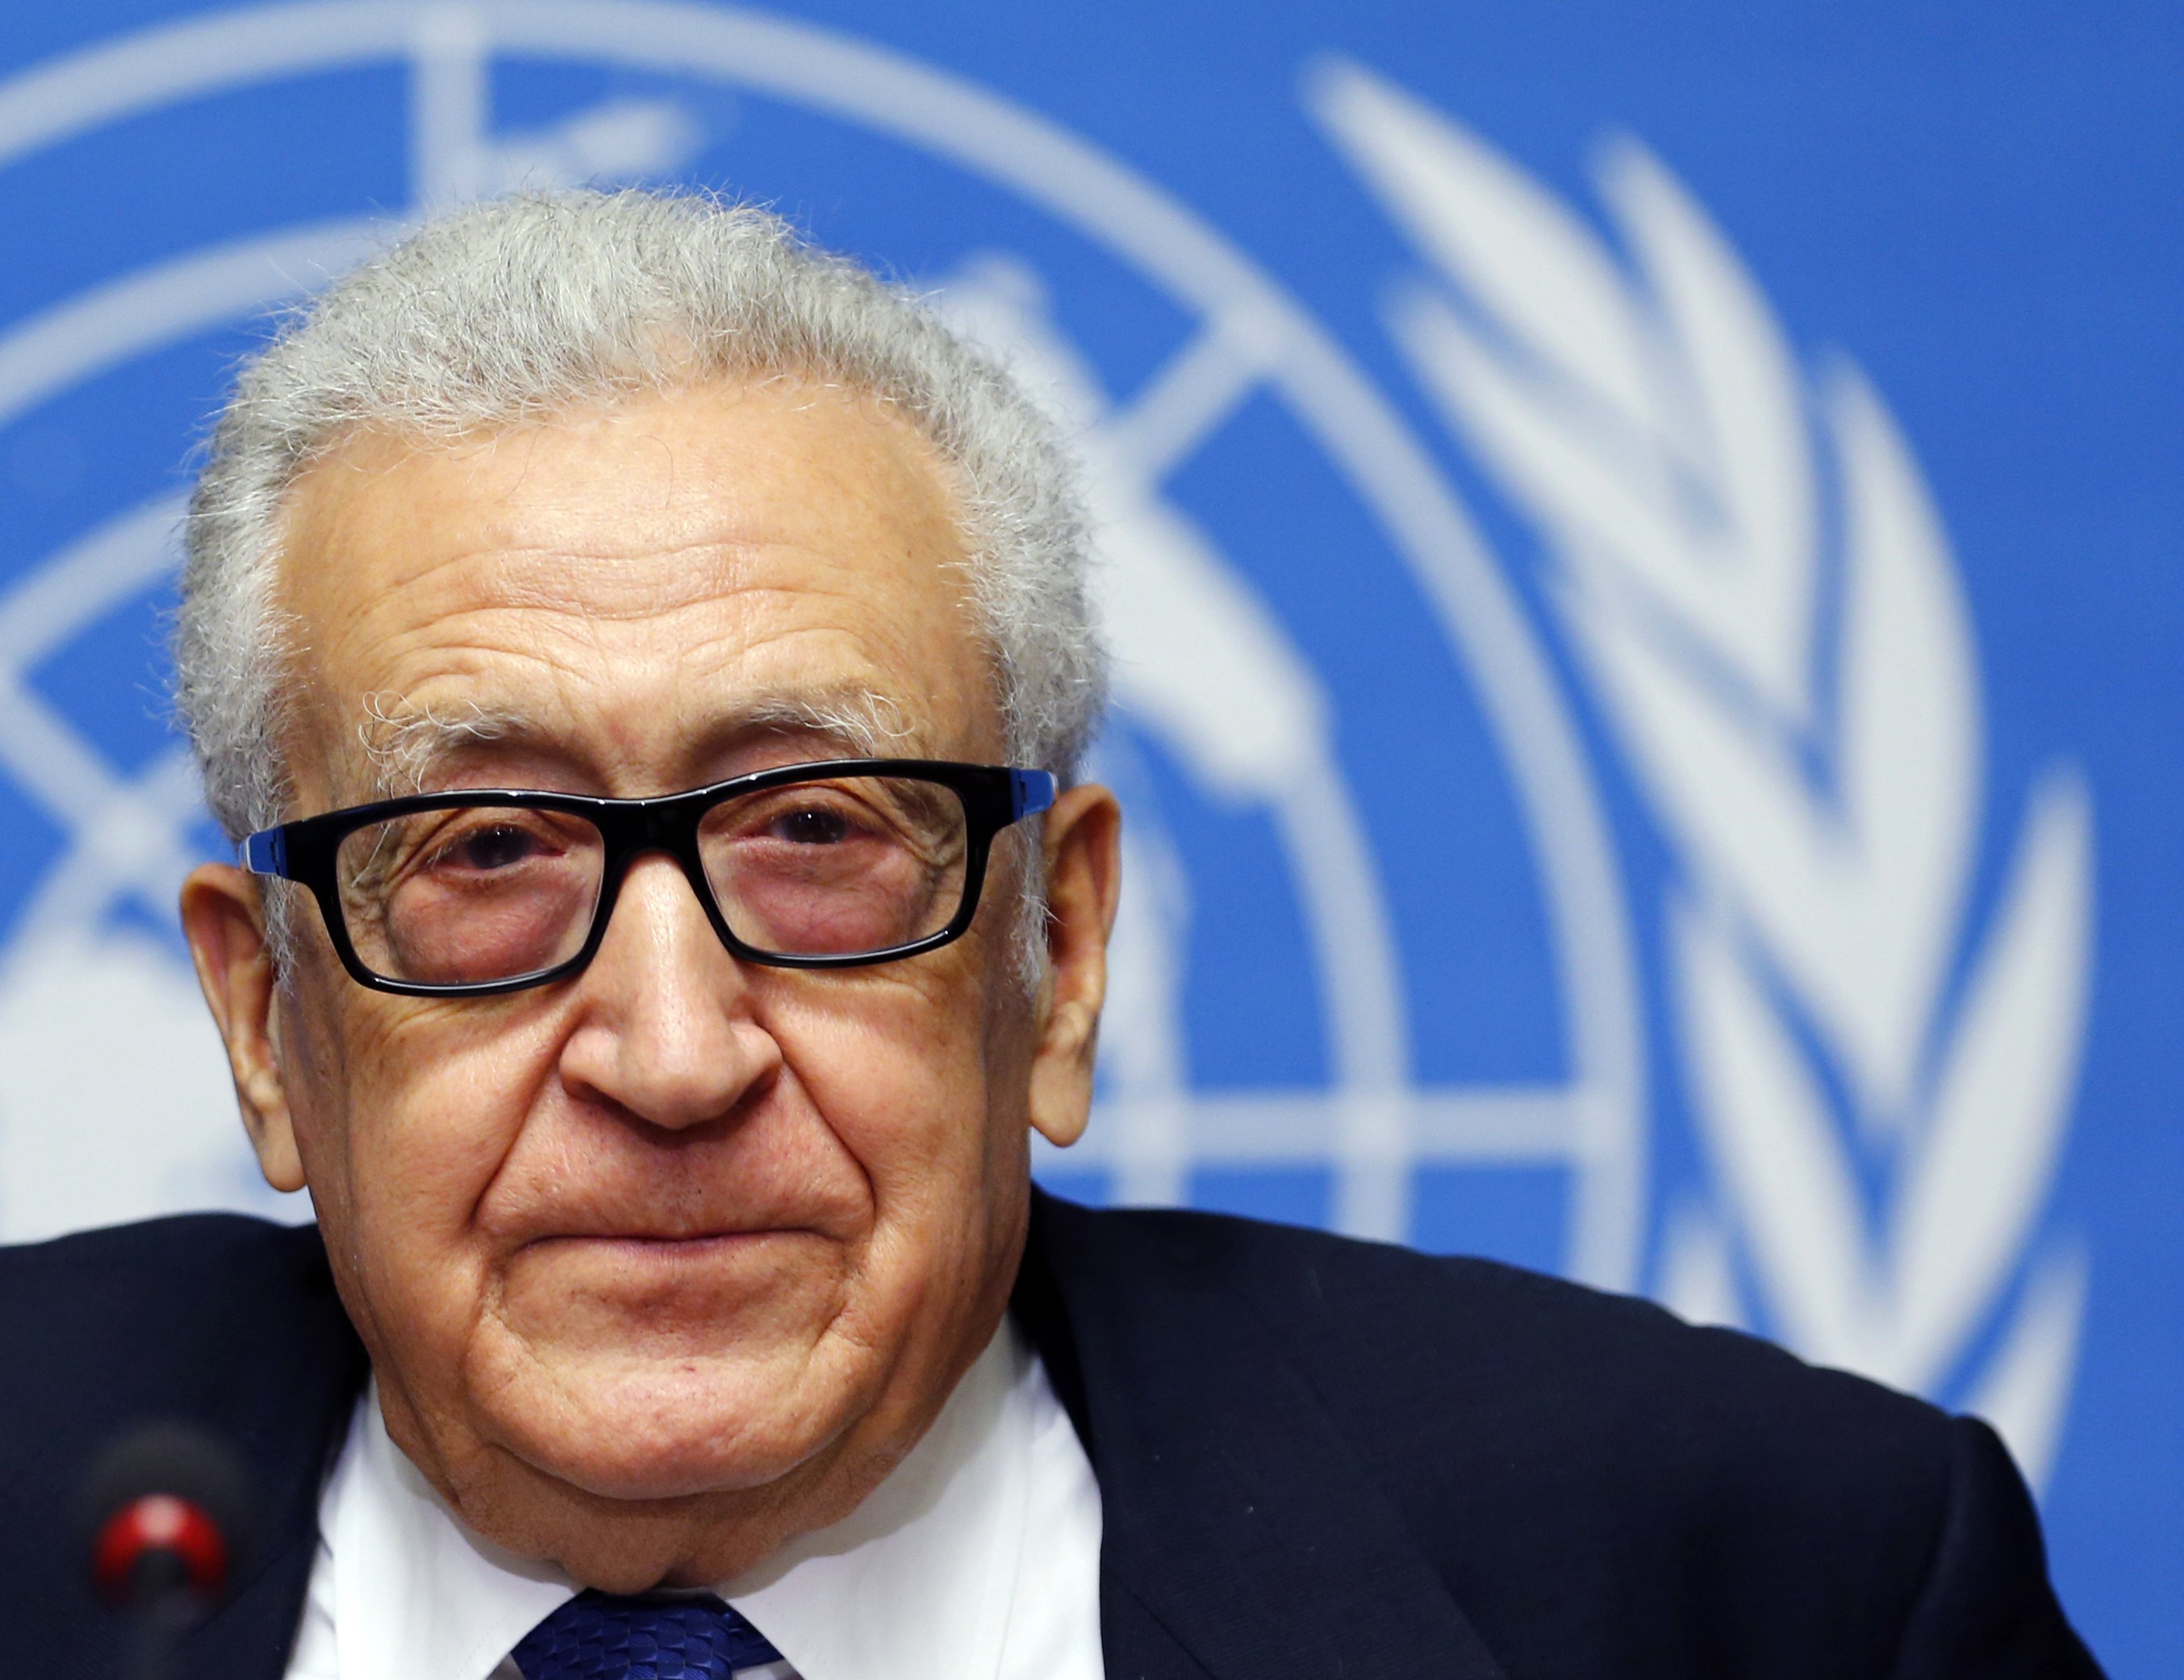 Το τέλος των συνομιλιών για τη Συρία ανακοίνωσε ο ΟΗΕ